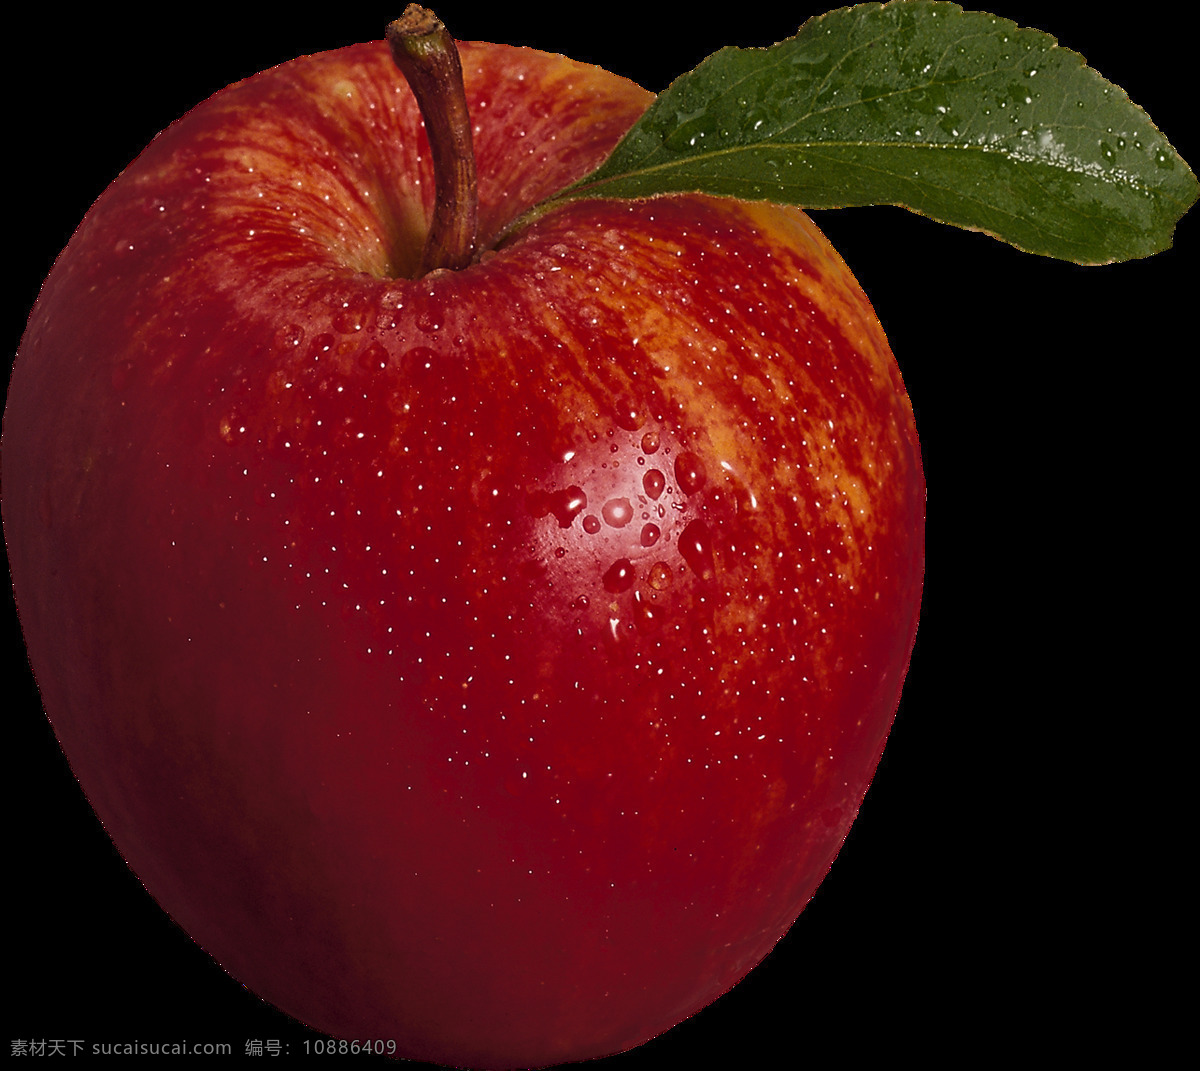 漂亮 红苹果 免 抠 透明 图 层 青苹果 苹果卡通图片 苹果logo 苹果简笔画 壁纸高清 大苹果 苹果梨树 苹果 苹果商标 金毛苹果 青苹果榨汁